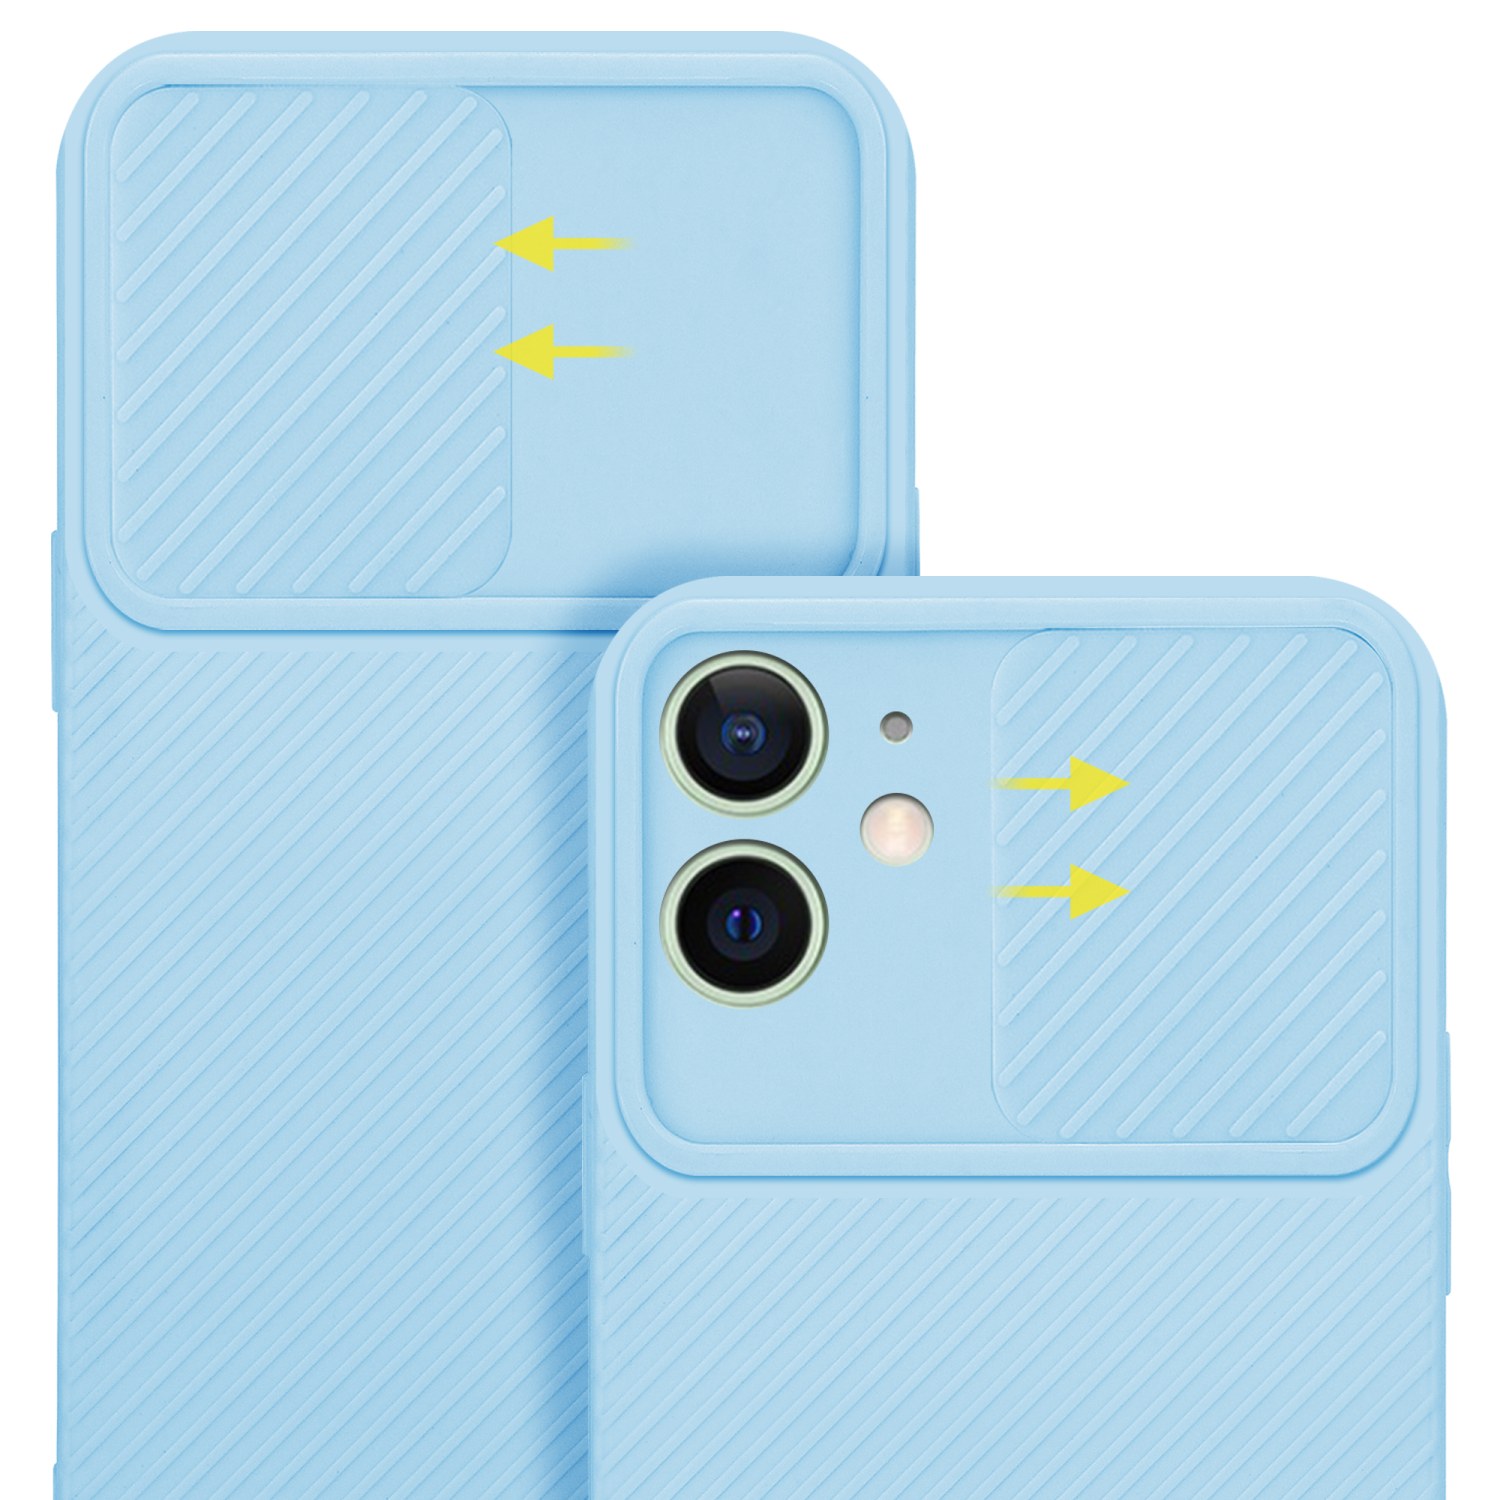 Coque pour Apple iPhone 12 MINI en Bonbon Bleu Clair Housse de protection Étui en silicone TPU flexible et avec protection pour appareil photo